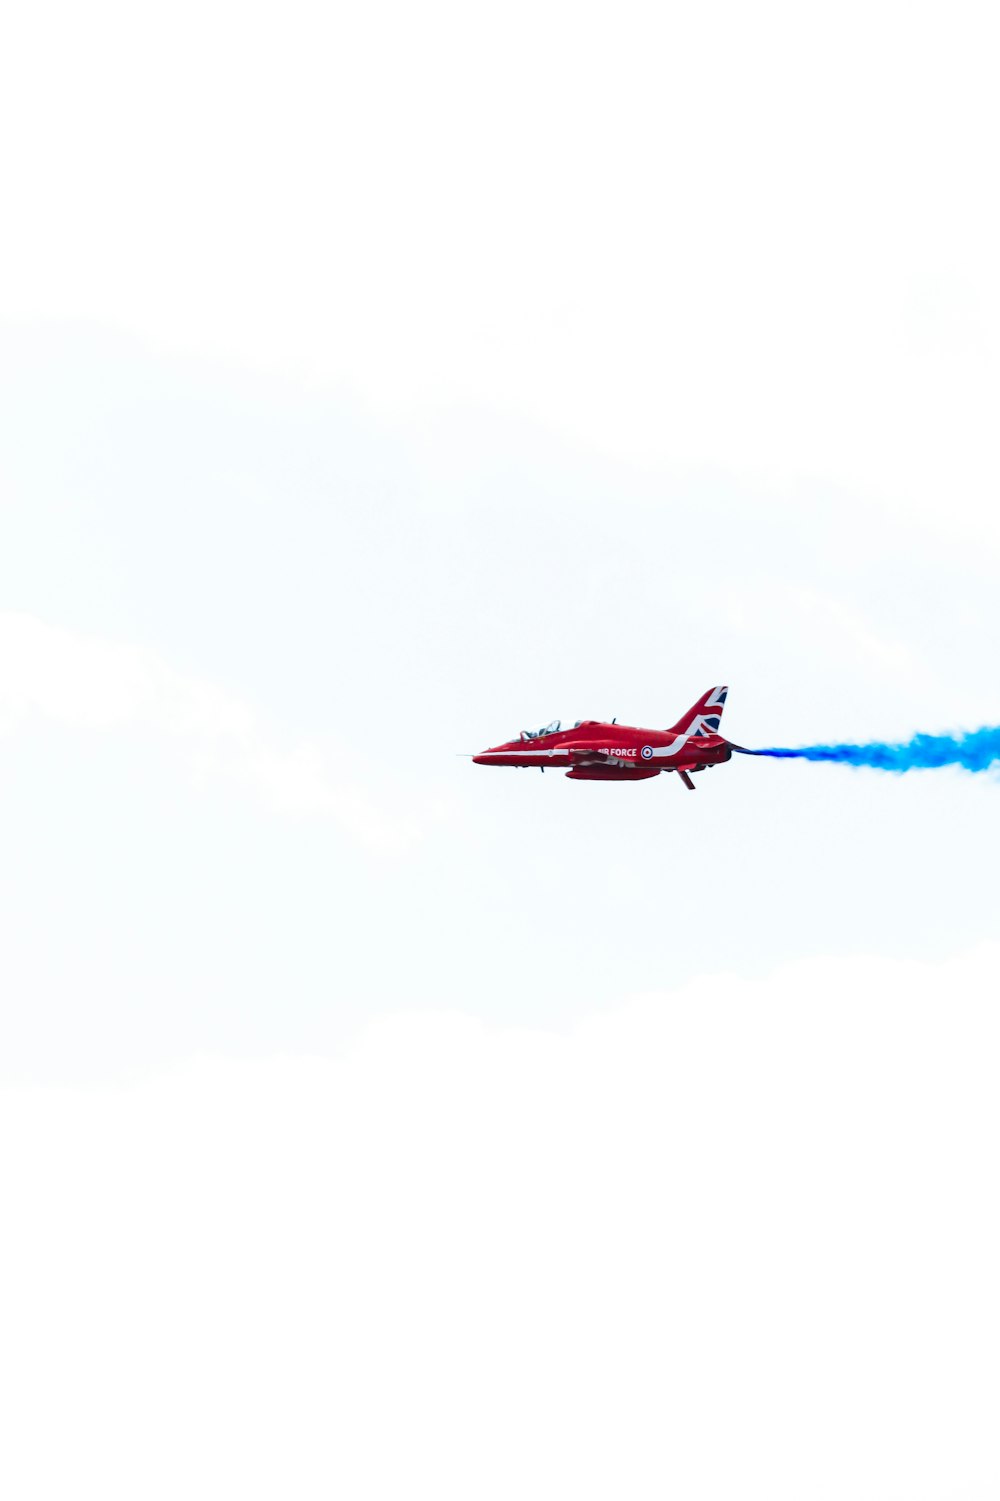 Un aereo rosso con fumo blu